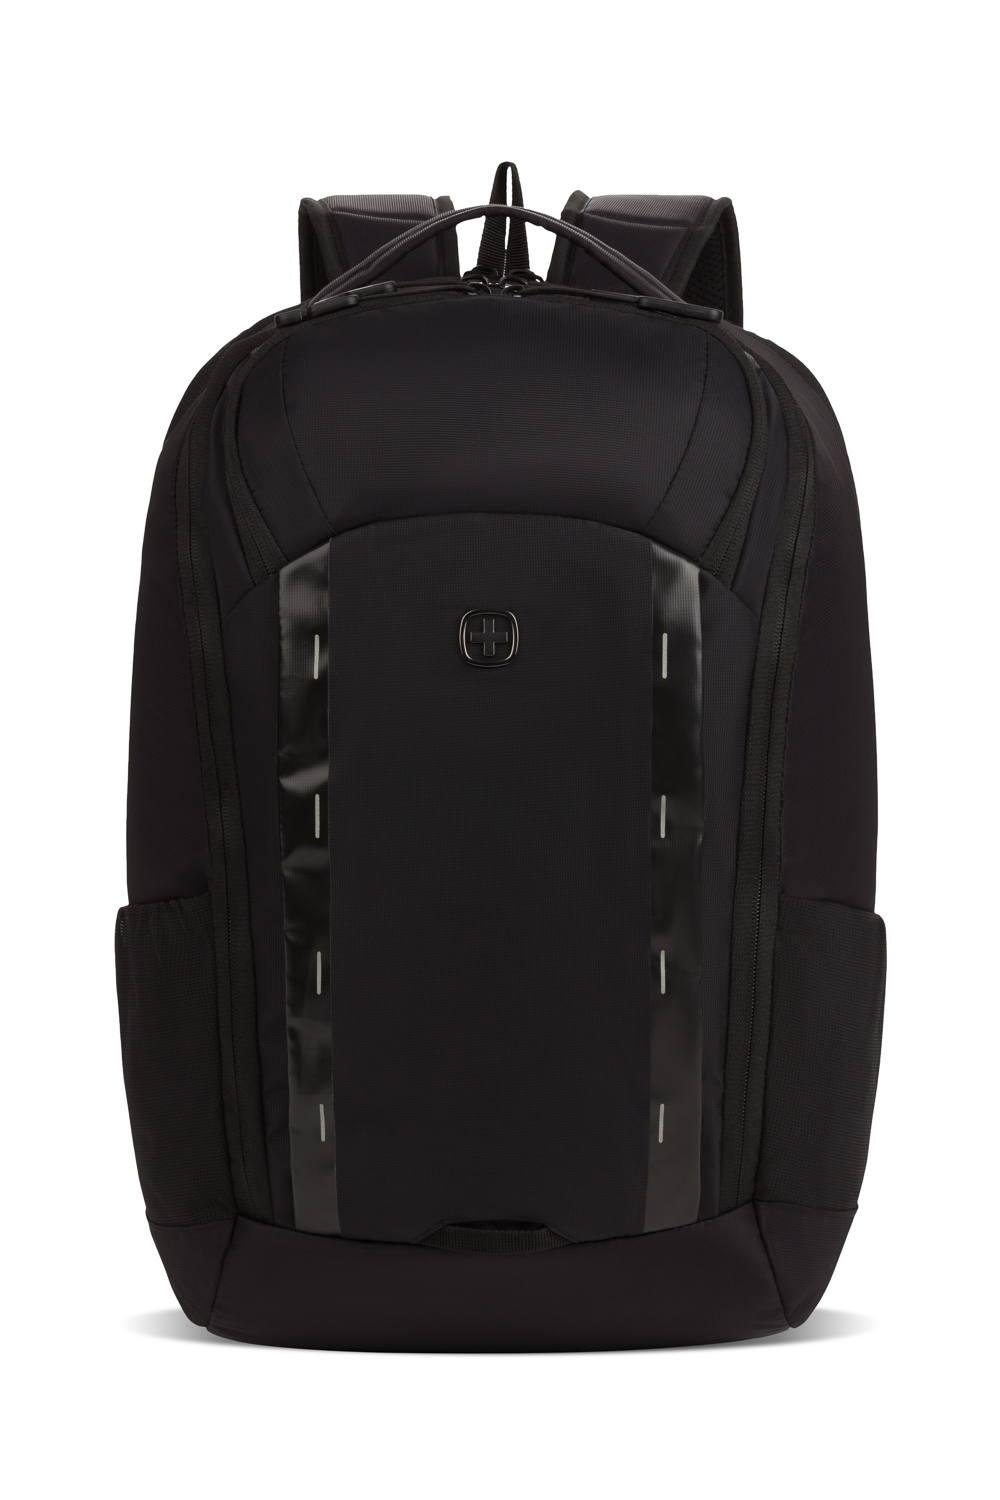 Swissgear 8117 15 Laptop backpack